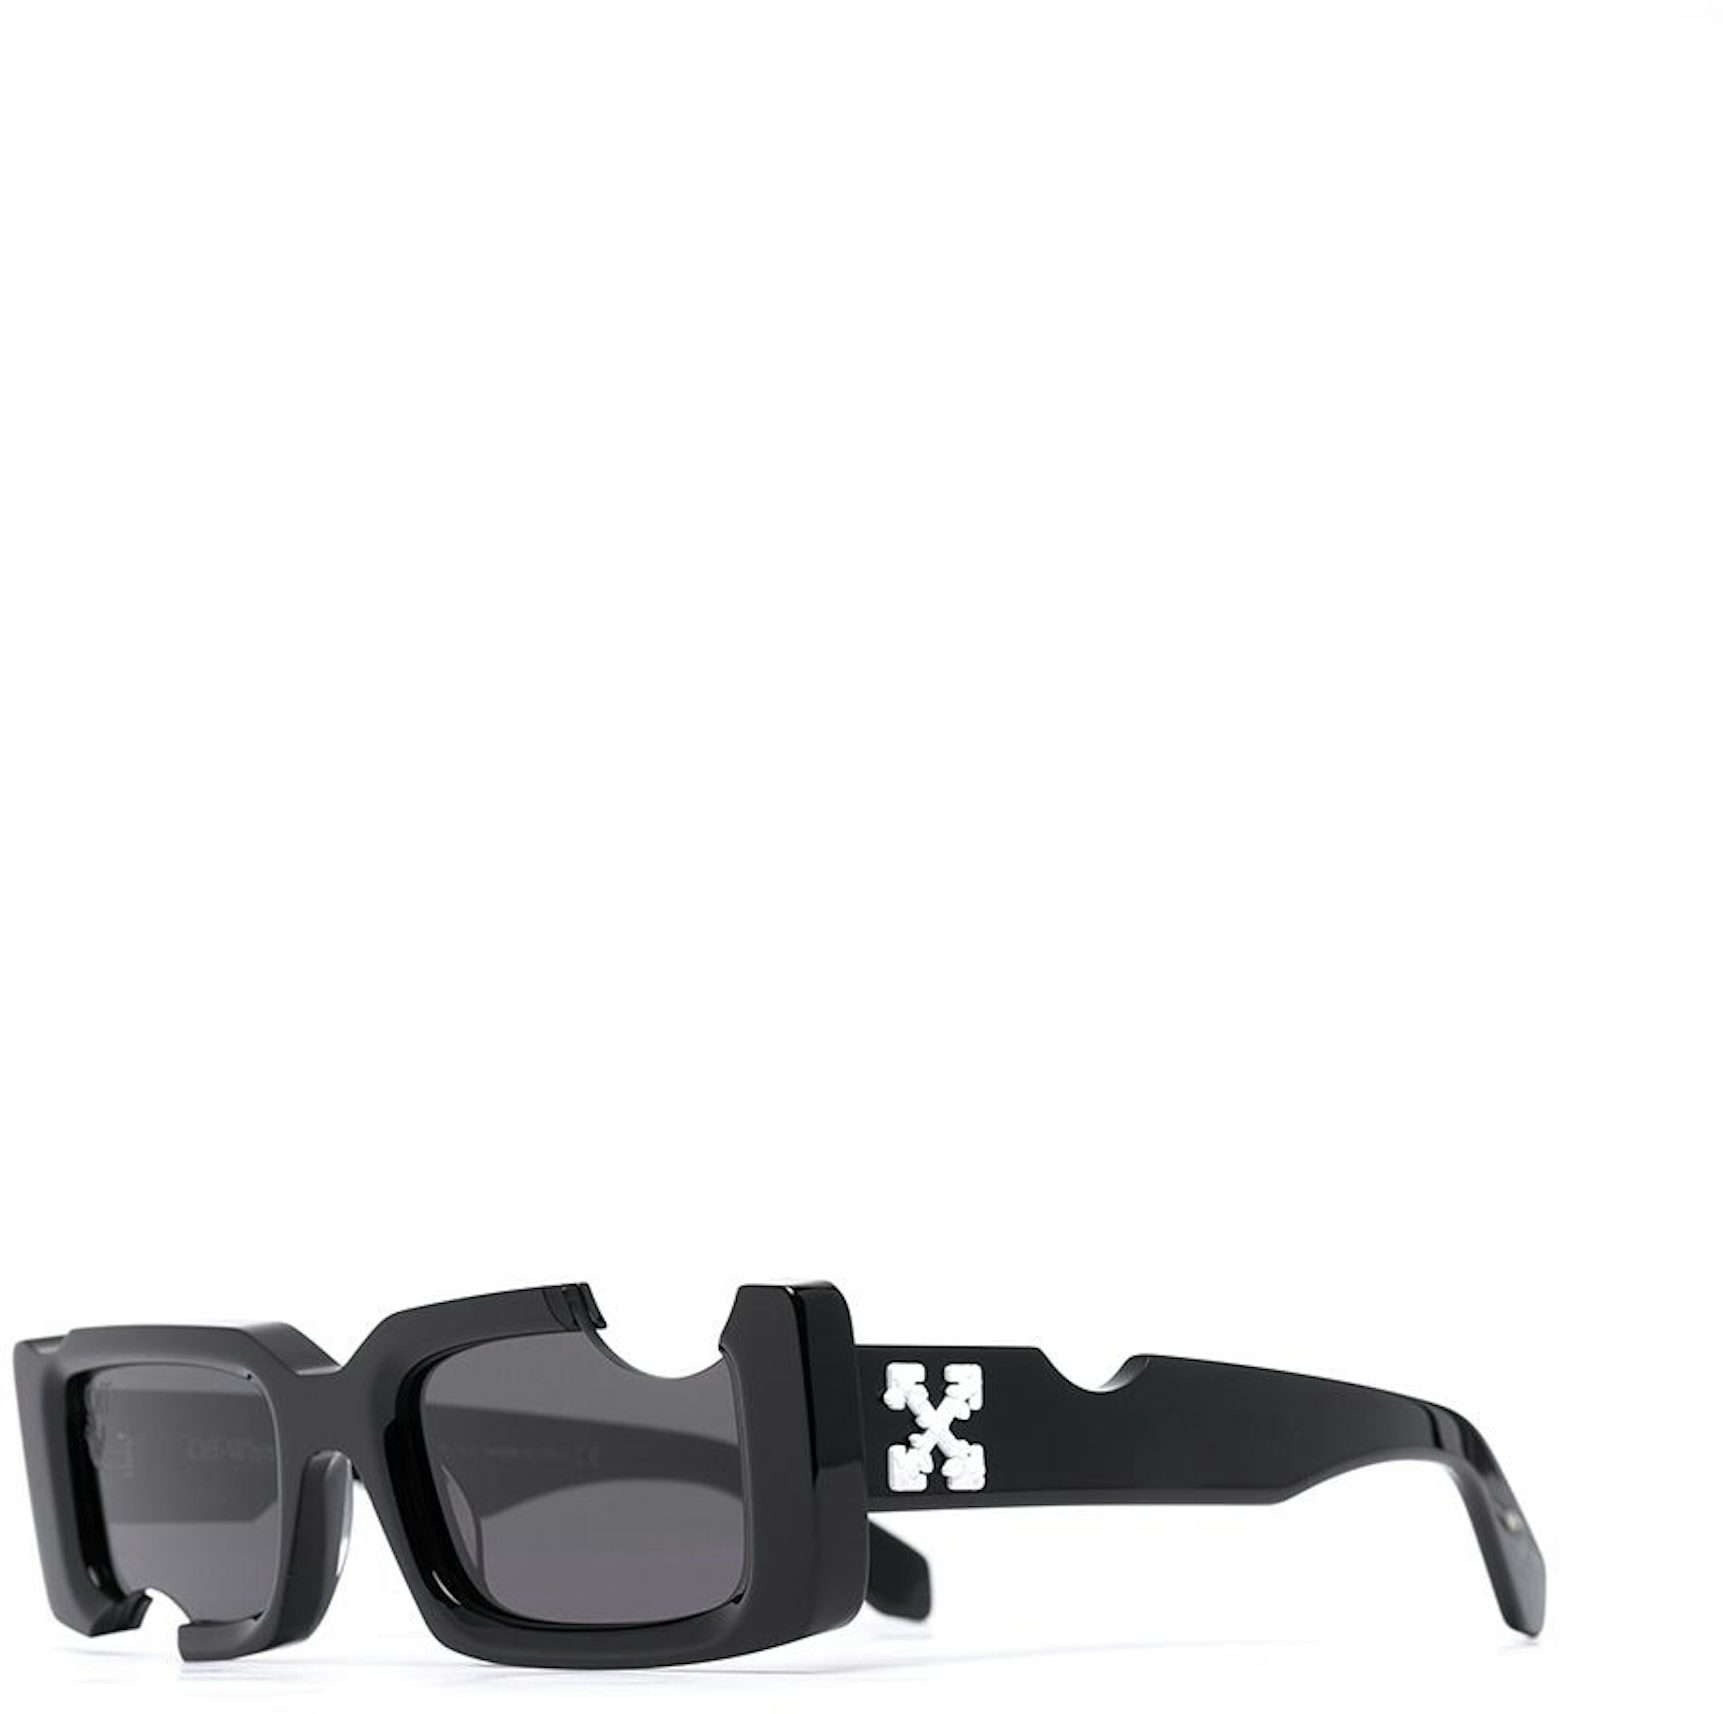 Off-White Virgil Sunglasses OERI008C99PLA0024545 Crystal Frame Blue Lens